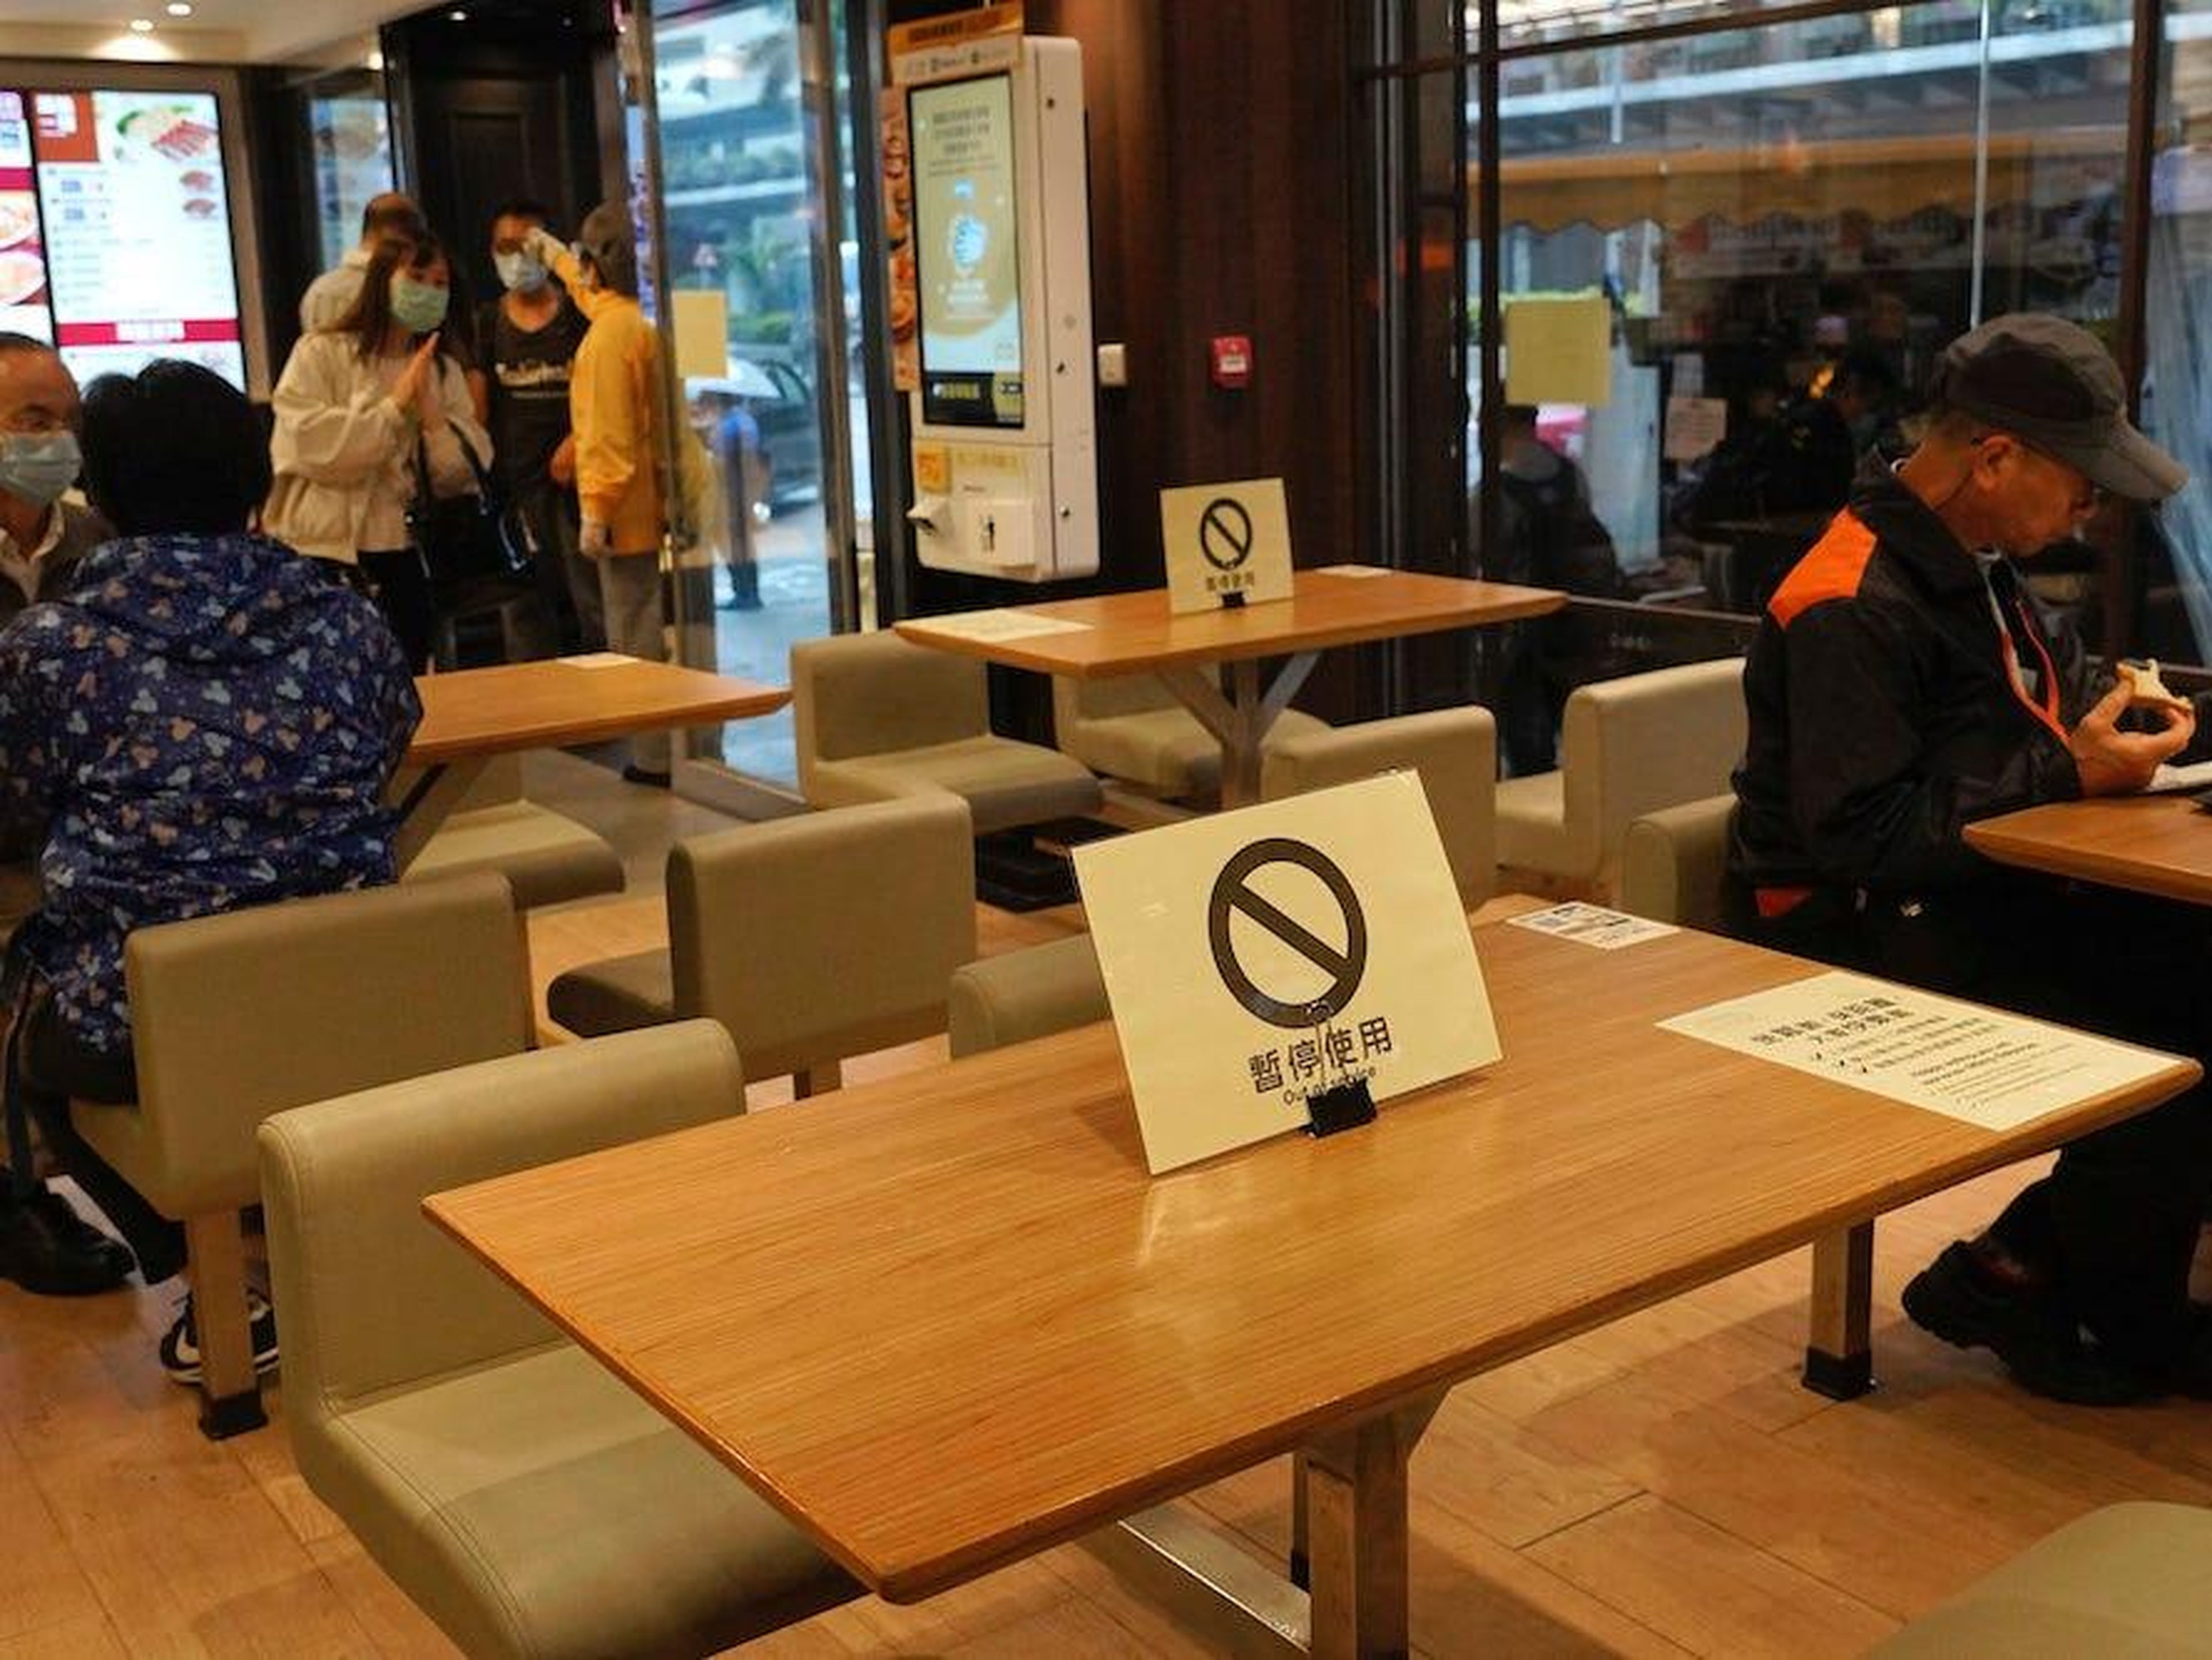 Señales de distanciamiento social en las mesas de un restaurante en Hong Kong.